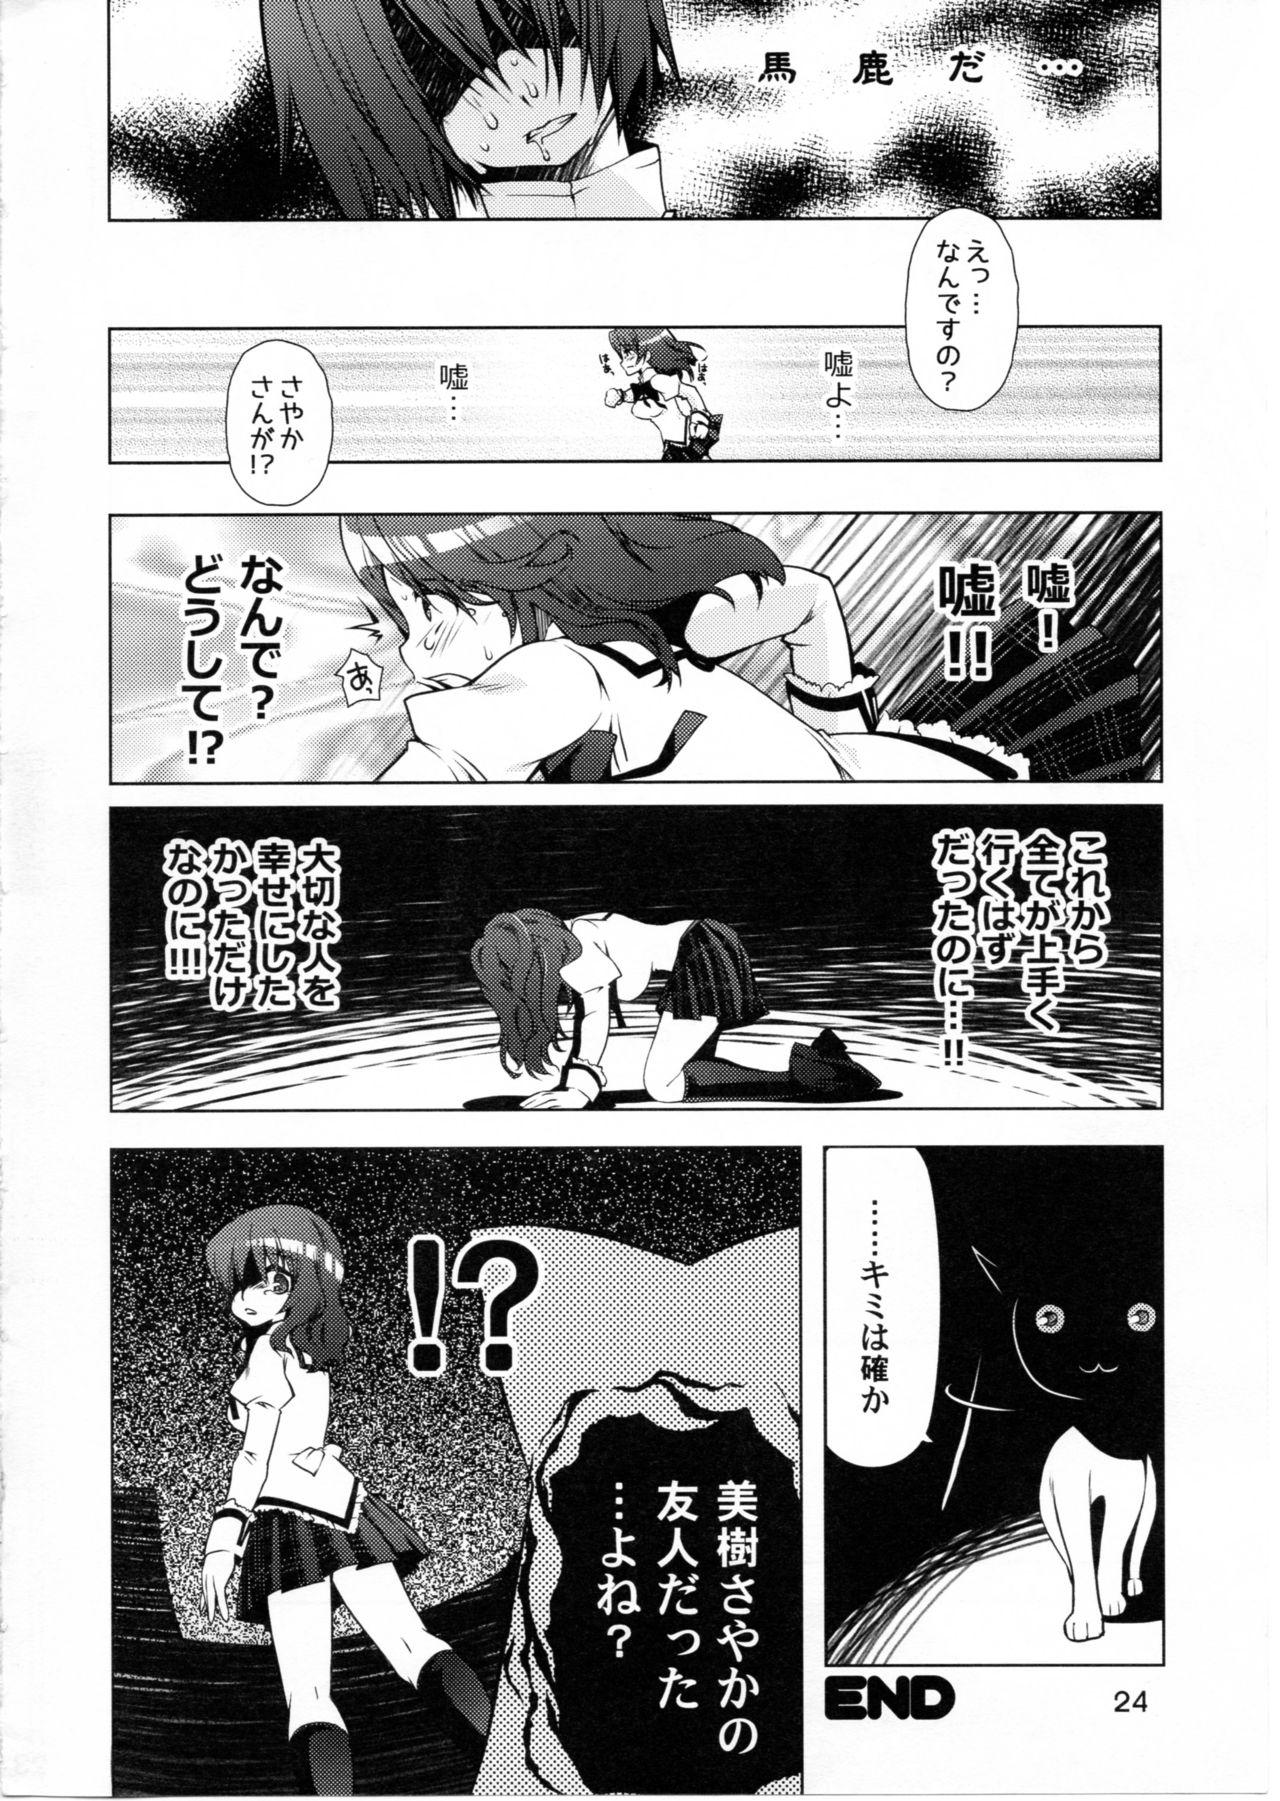 Alone Ushitora 3 - Puella magi madoka magica Gay Masturbation - Page 23